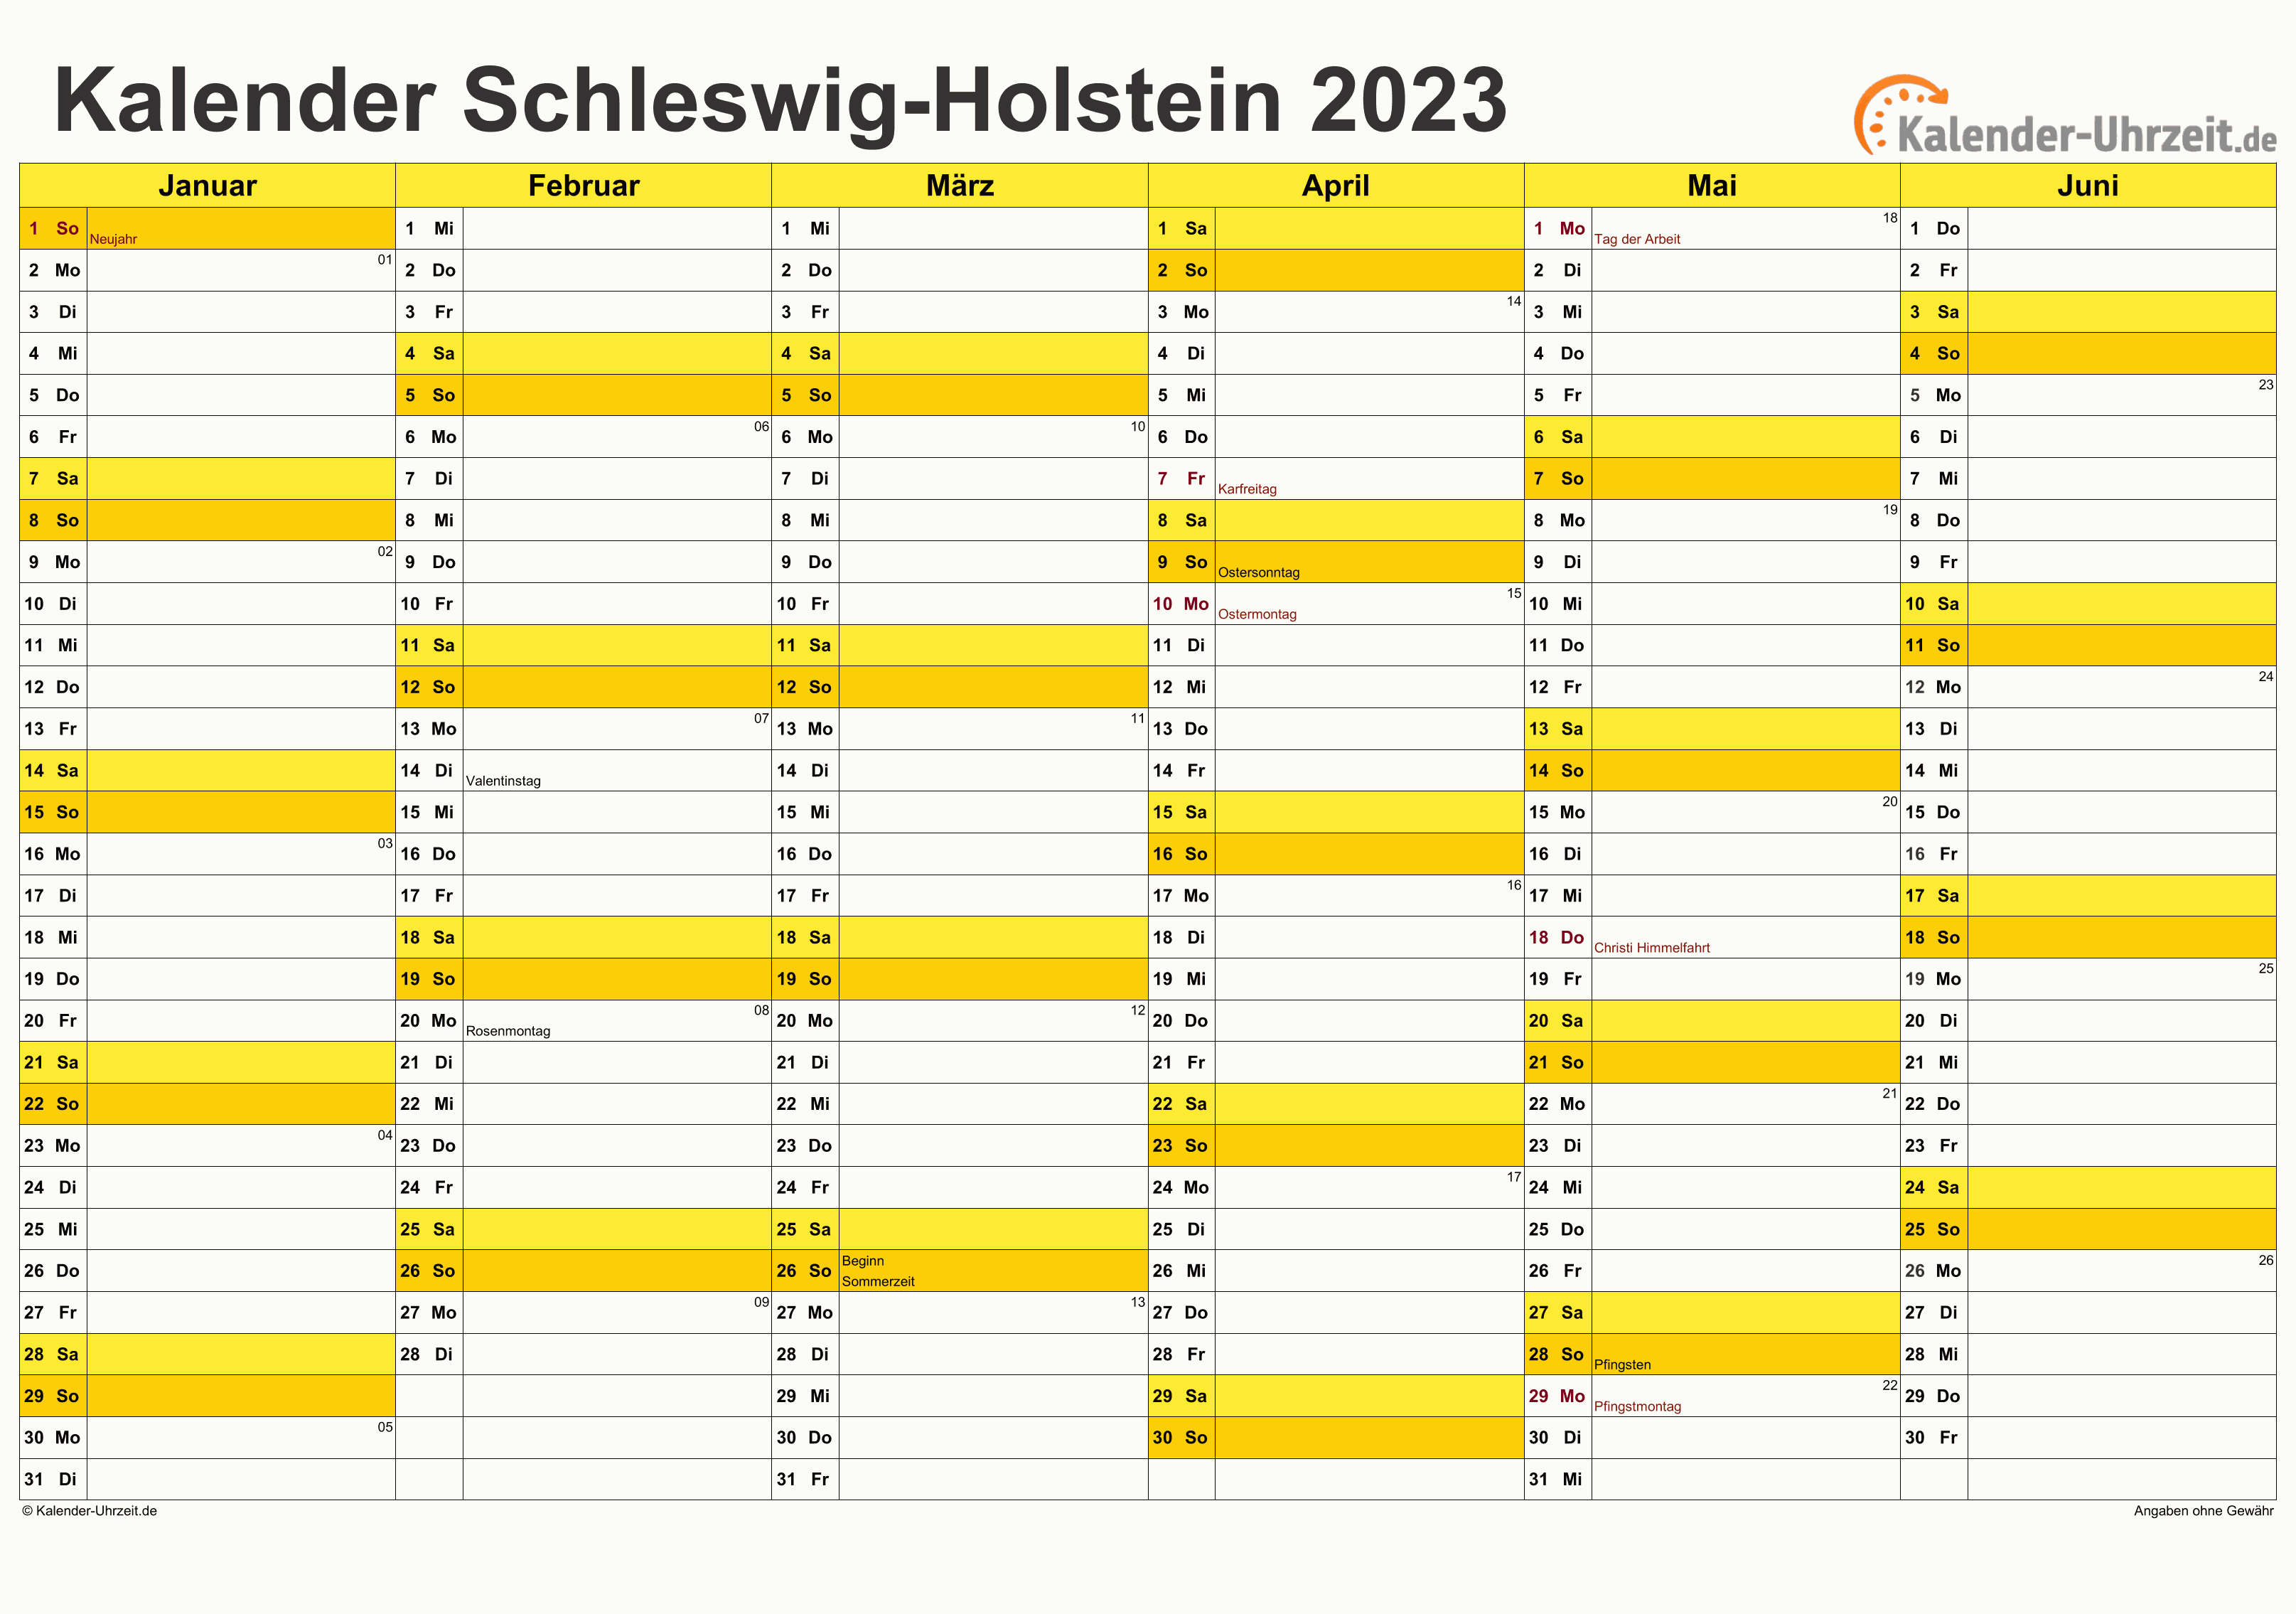 Schleswig-Holstein Kalender 2023 mit Feiertagen - quer-zweiseitig